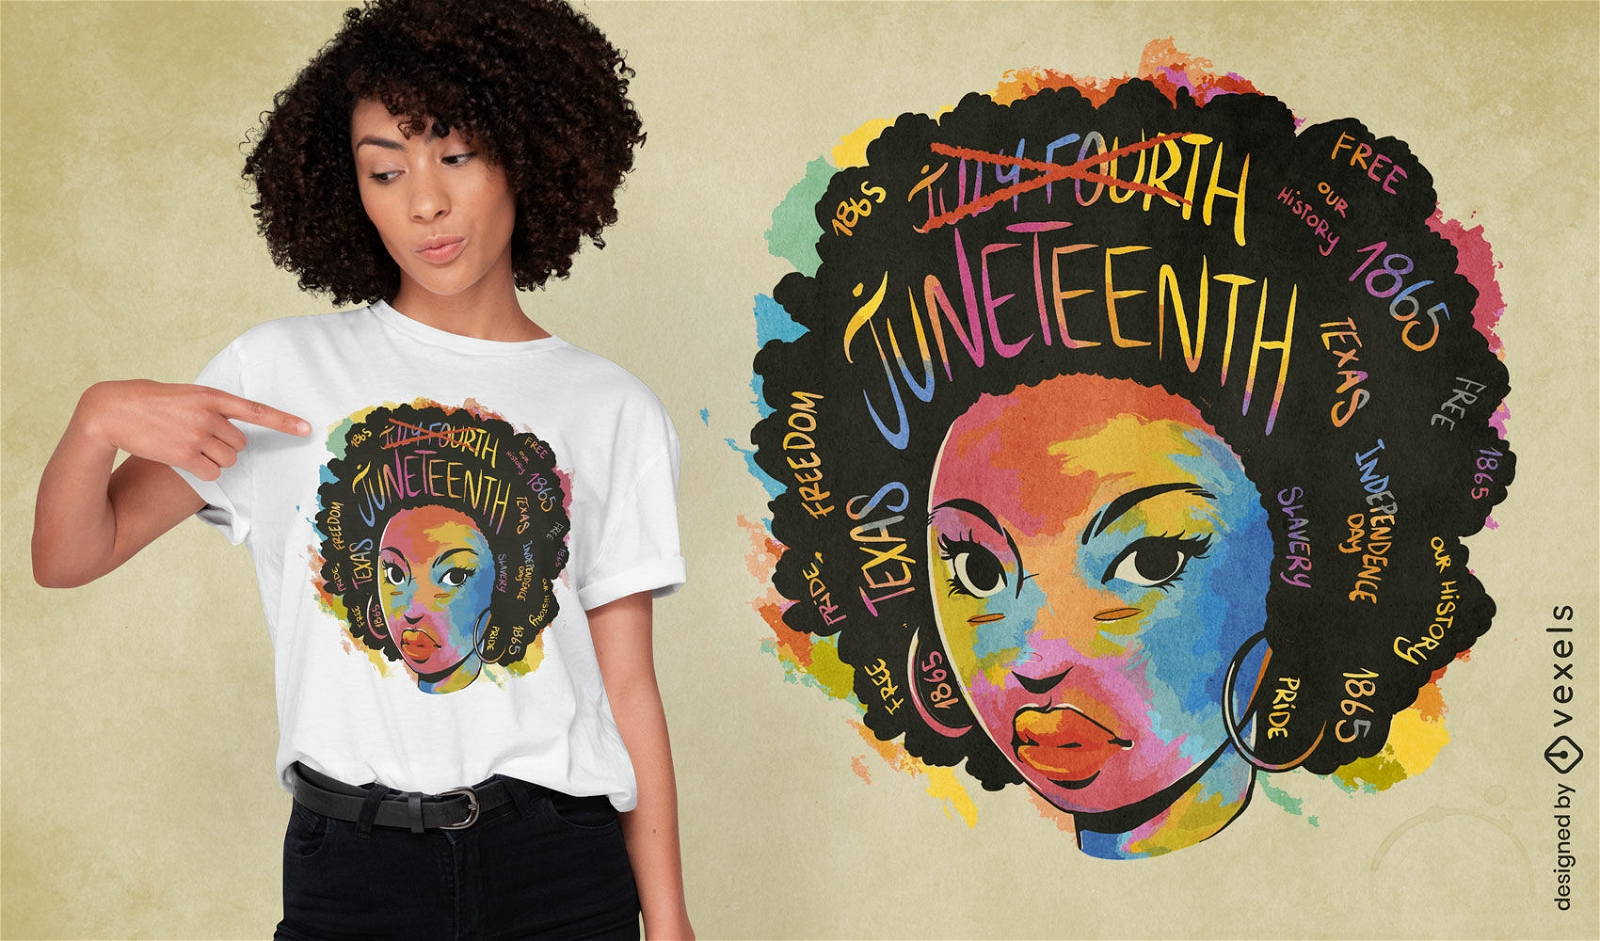 Black woman Juneteenth t-shirt design